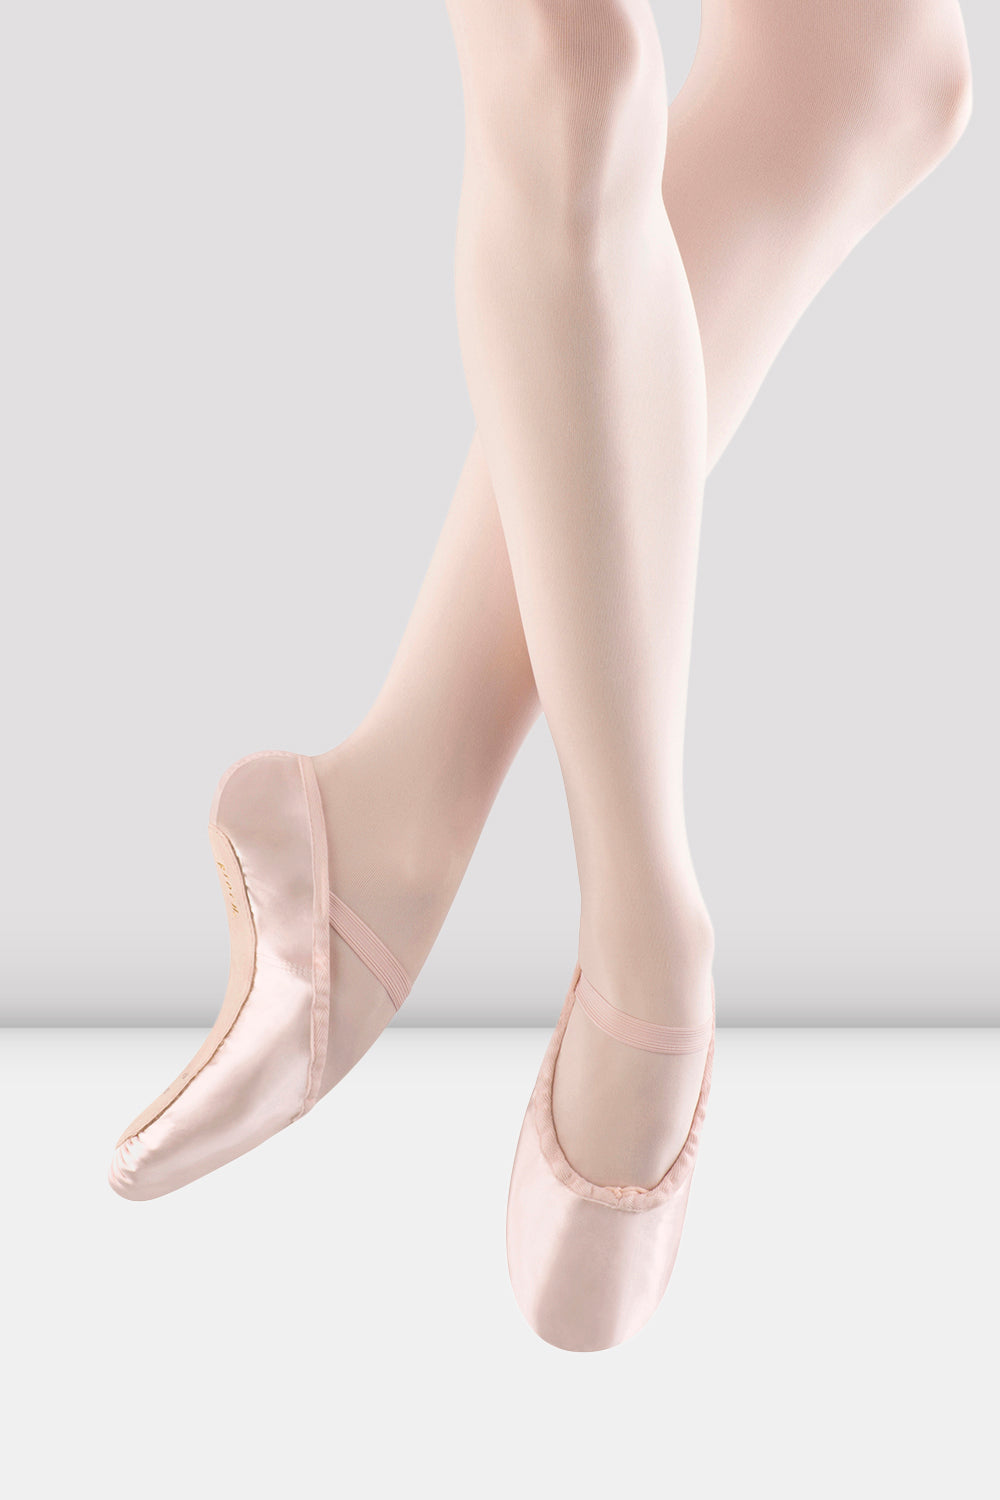 BLOCH Ladies Debut 1 Satin Ballet Shoes, Pink Satin